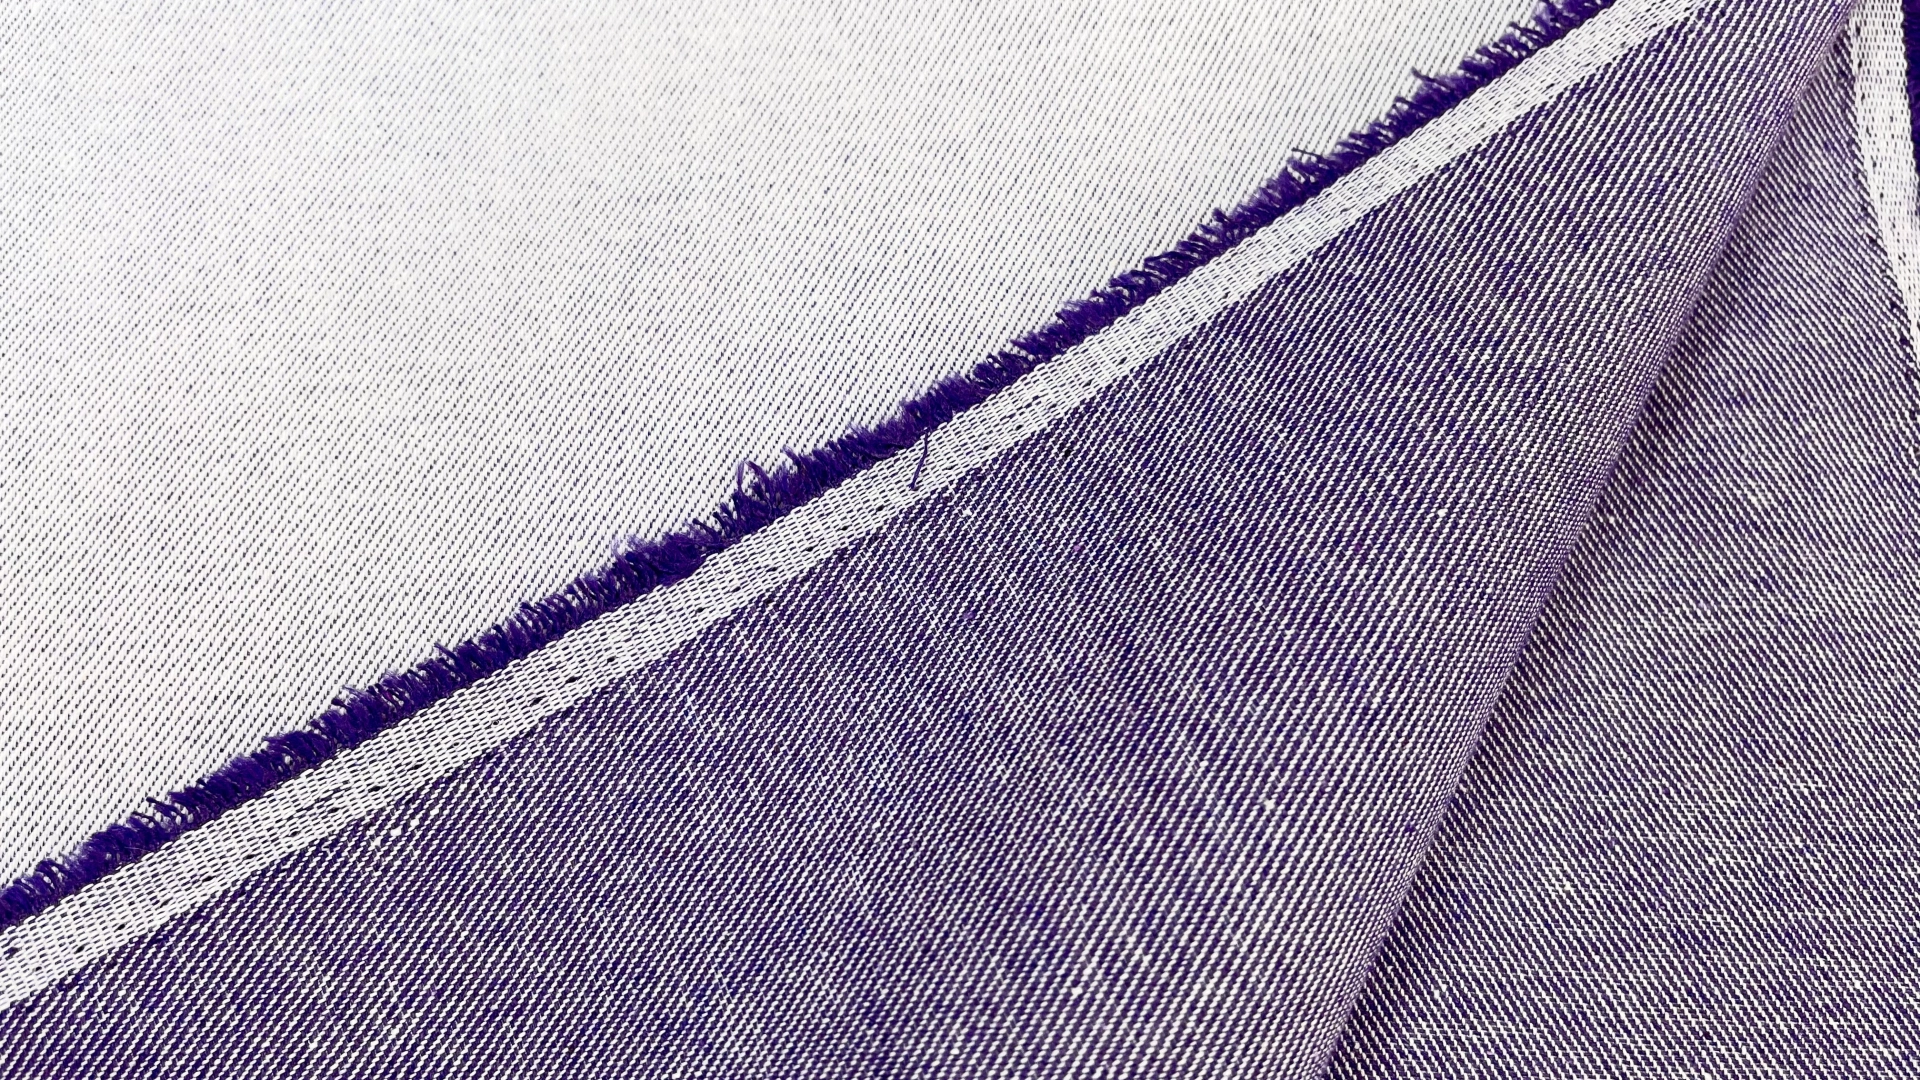 Двусторонний джинс с выраженным рубчиком фиолетового цвета. Подойдет для пошива летних джинс, куртки или юбки.